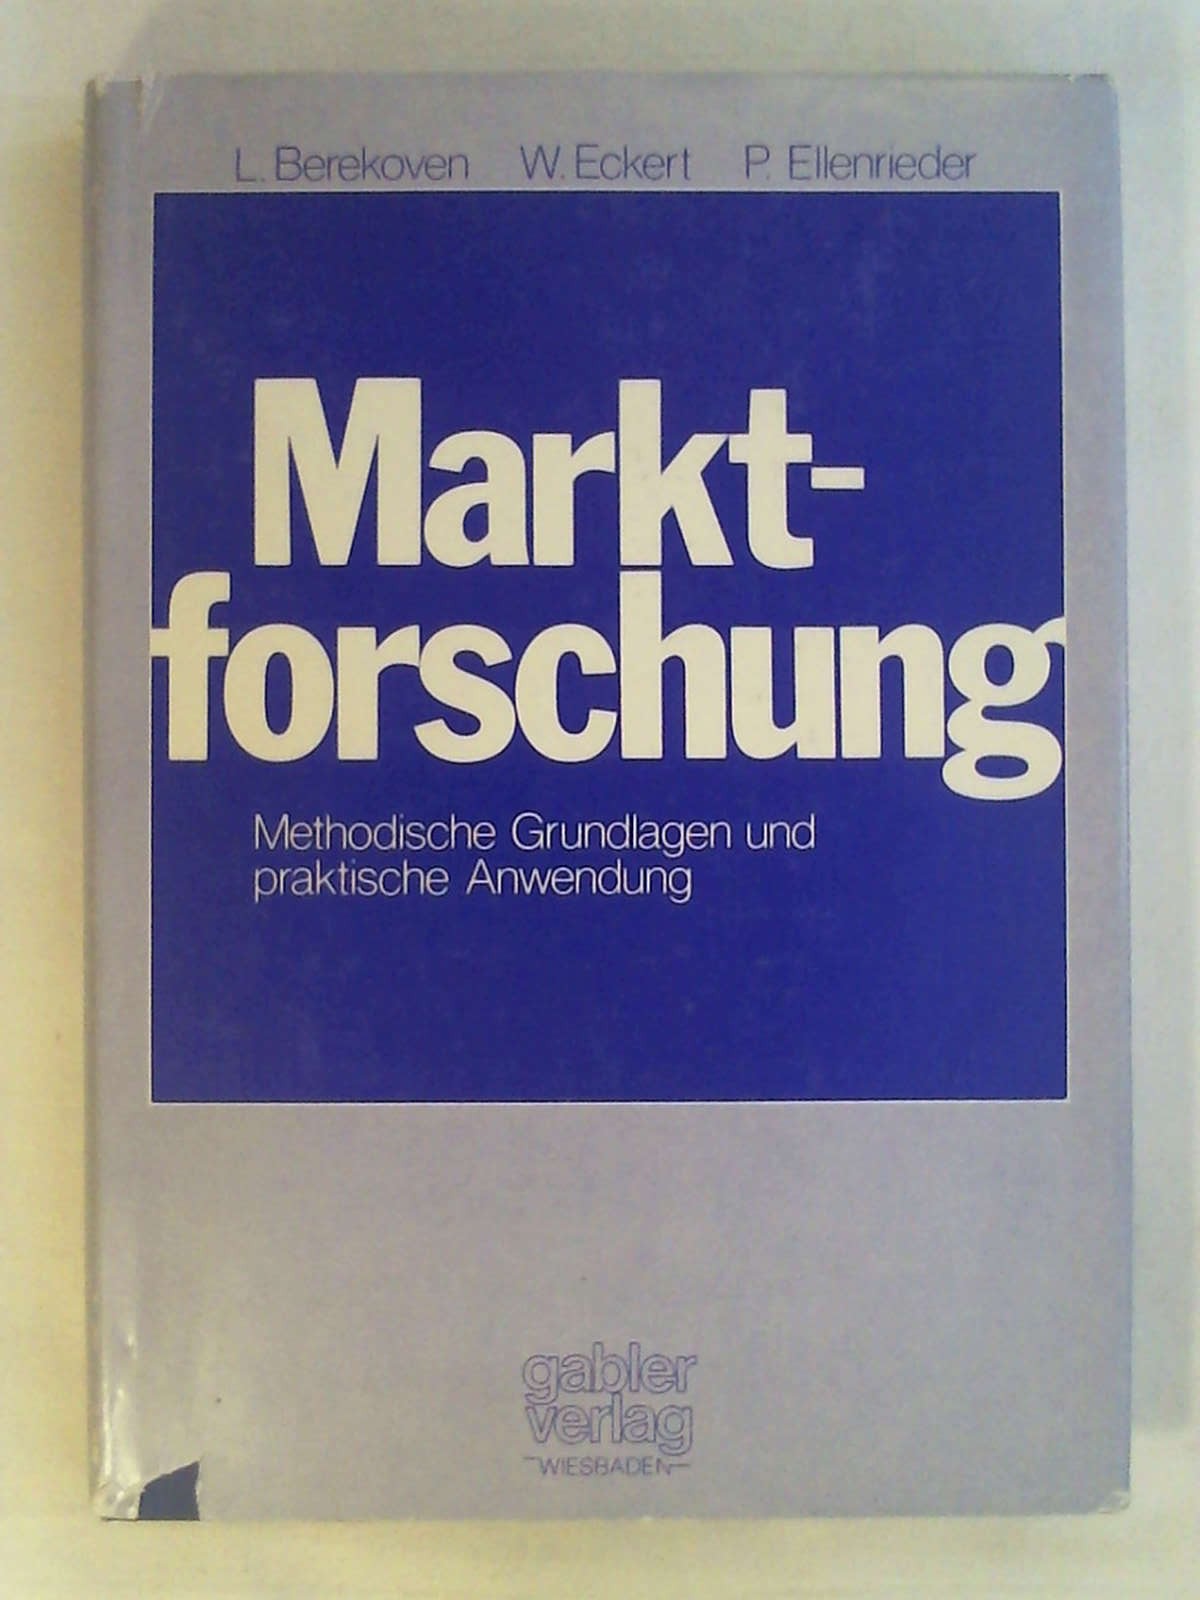 Marktforschung: Method. Grundlagen u. prakt. Anwendung (German Edition): Methodische Grundlagen und praktische Anwendung. - Ludwig Berekoven